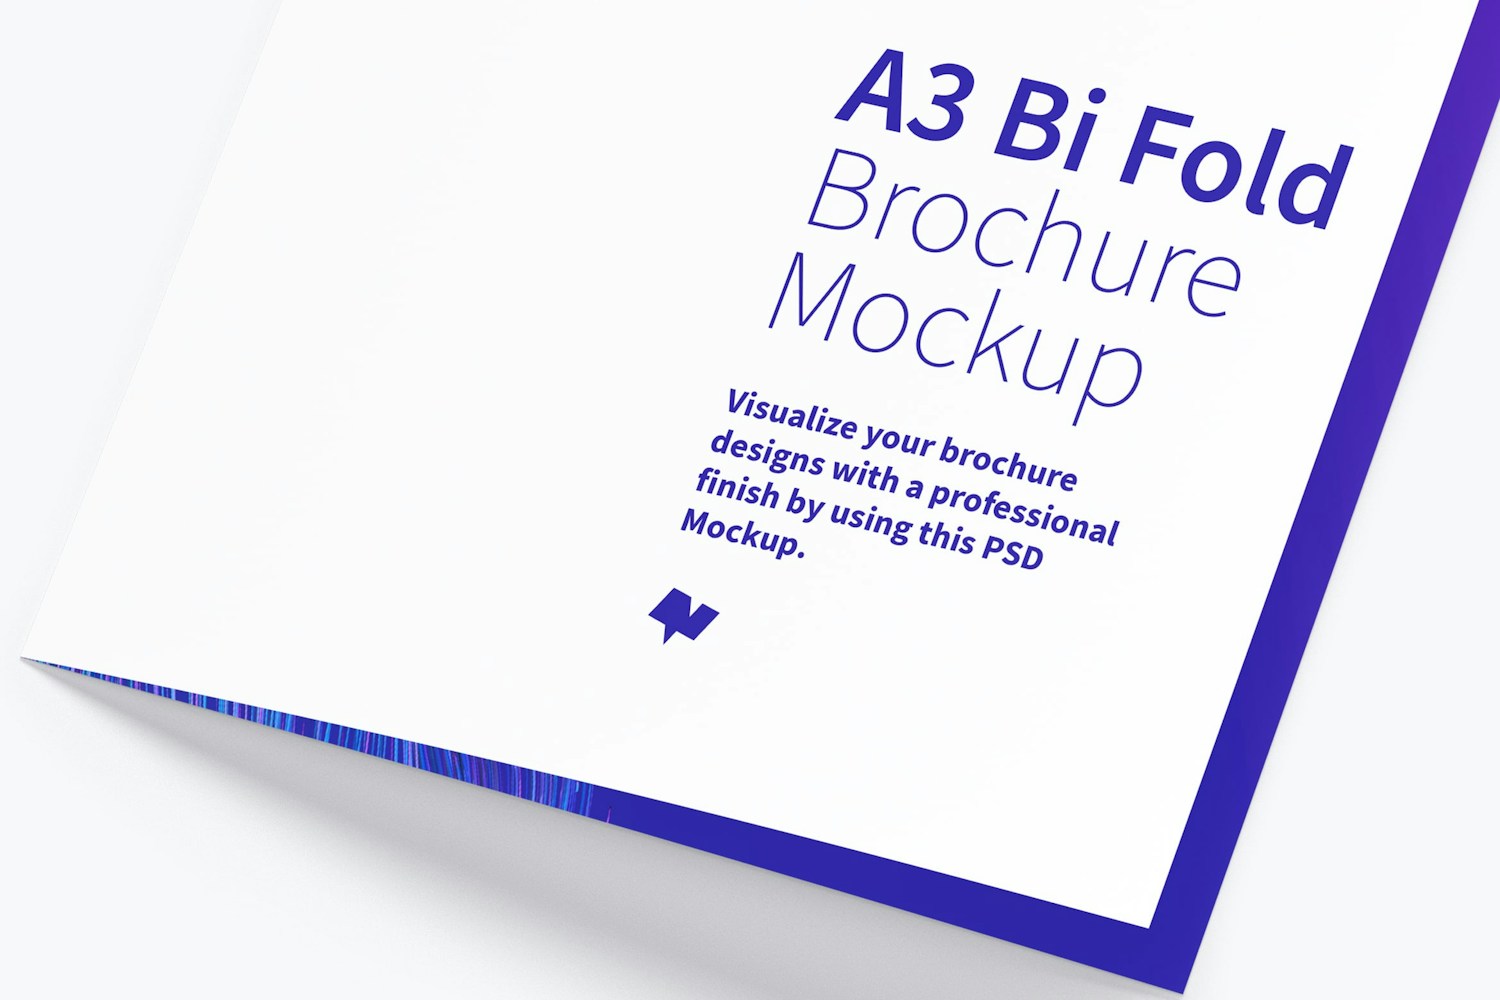 A3 Bi Fold Brochure Mockup 01 (3) by Original Mockups on Original Mockups